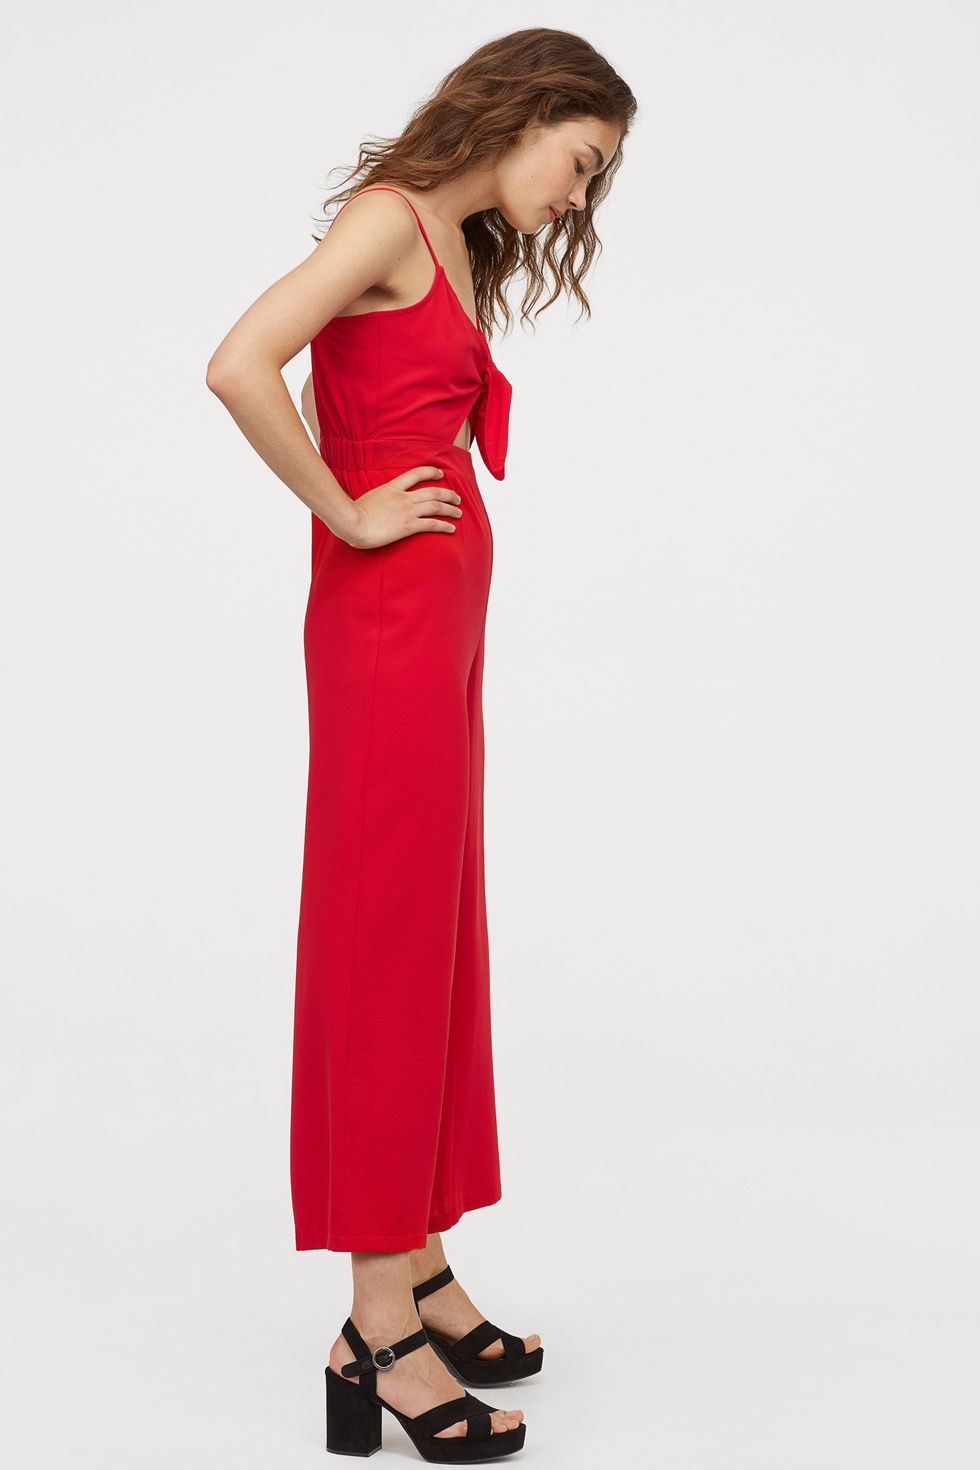 El largo culotte más barato de H&M-HyM su rojo ideal